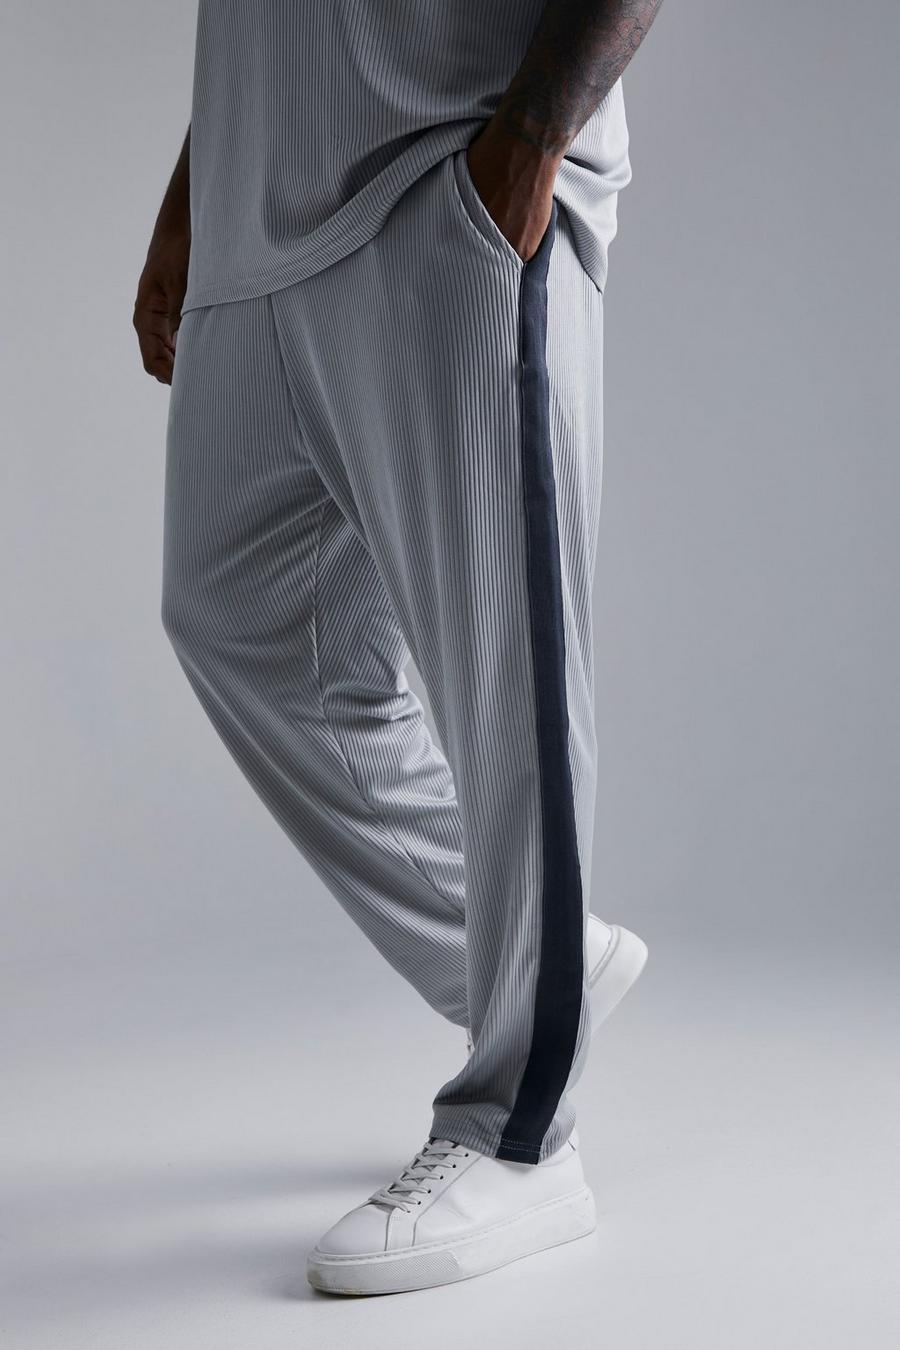 Pantalón deportivo Plus pesquero plisado ajustado con cinta, Grey grigio